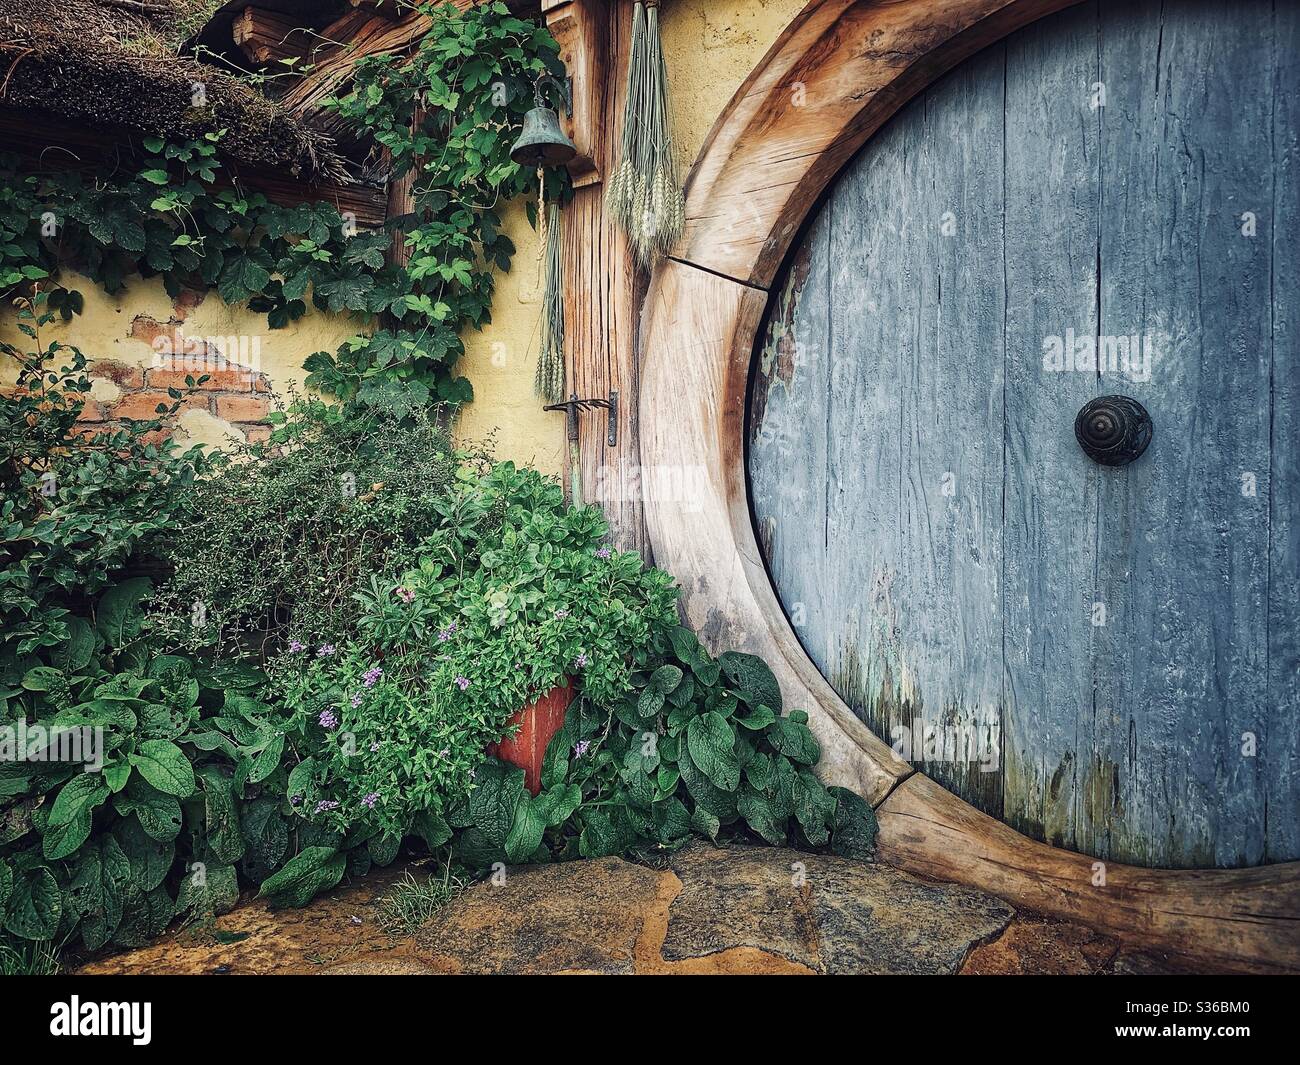 Hobbiton. Bukolischer Ort in Neuseeland, wo die Hobbits aus der Mittelerde leben. Lord of the rings Filmset. Blaue Holztür Stockfoto